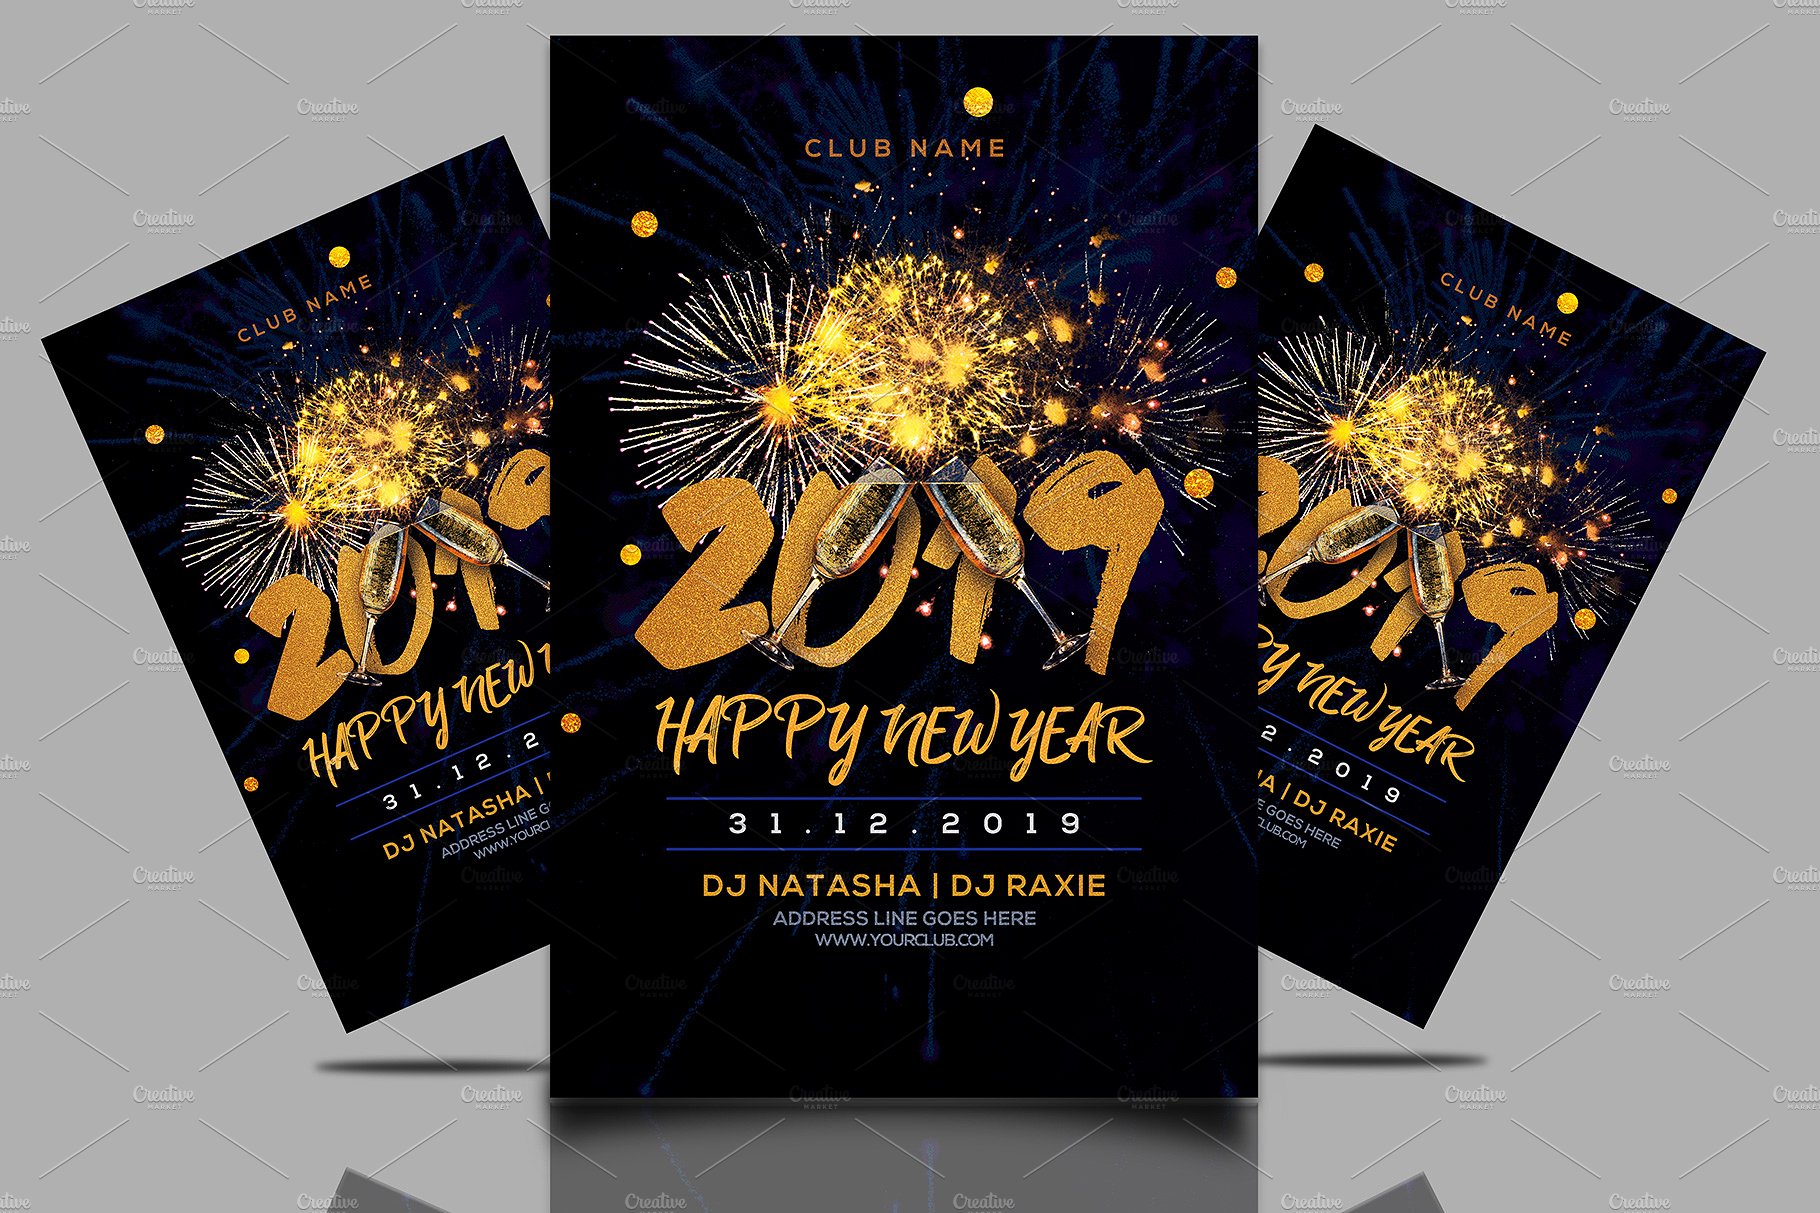 2019新年派对海报模板下载 New Year Party Flyer [psd]插图(1)